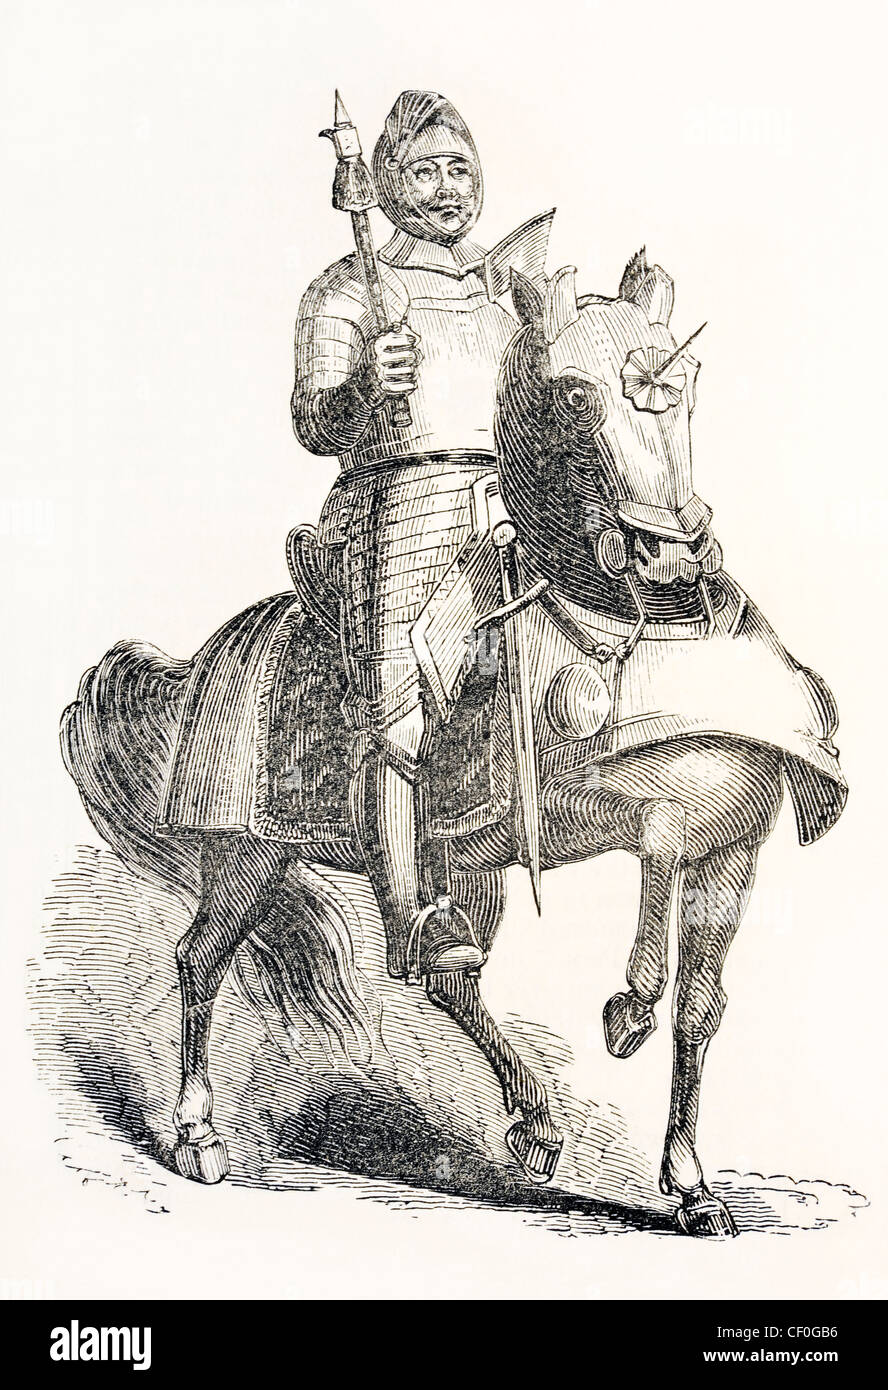 Gravure d'anglais médiéval chevalier sur cheval de guerre de Knight's pictorial Museum of Nature, publié 1844 Banque D'Images